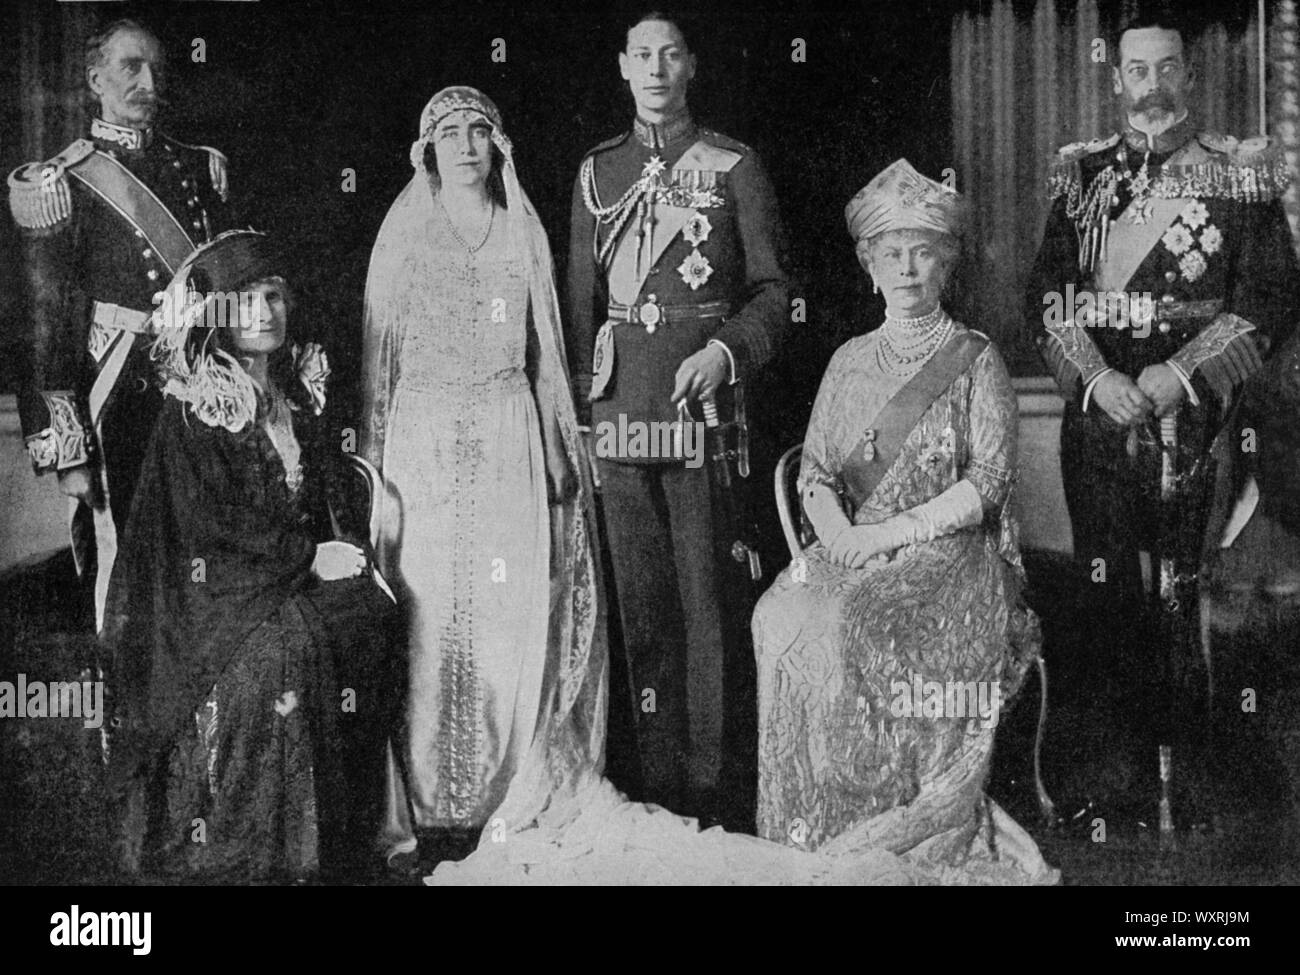 Un groupe familial, pris après le mariage du duc et de la duchesse de York, le 26th avril 1923. Le mariage du Prince Albert, du duc de York et de Lady Elizabeth Bowes-Lyon a eu lieu le 26th avril 1923 à l'abbaye de Westminster. Le couple fut plus tard connu sous le nom de roi George VI et de reine Elizabeth. Banque D'Images